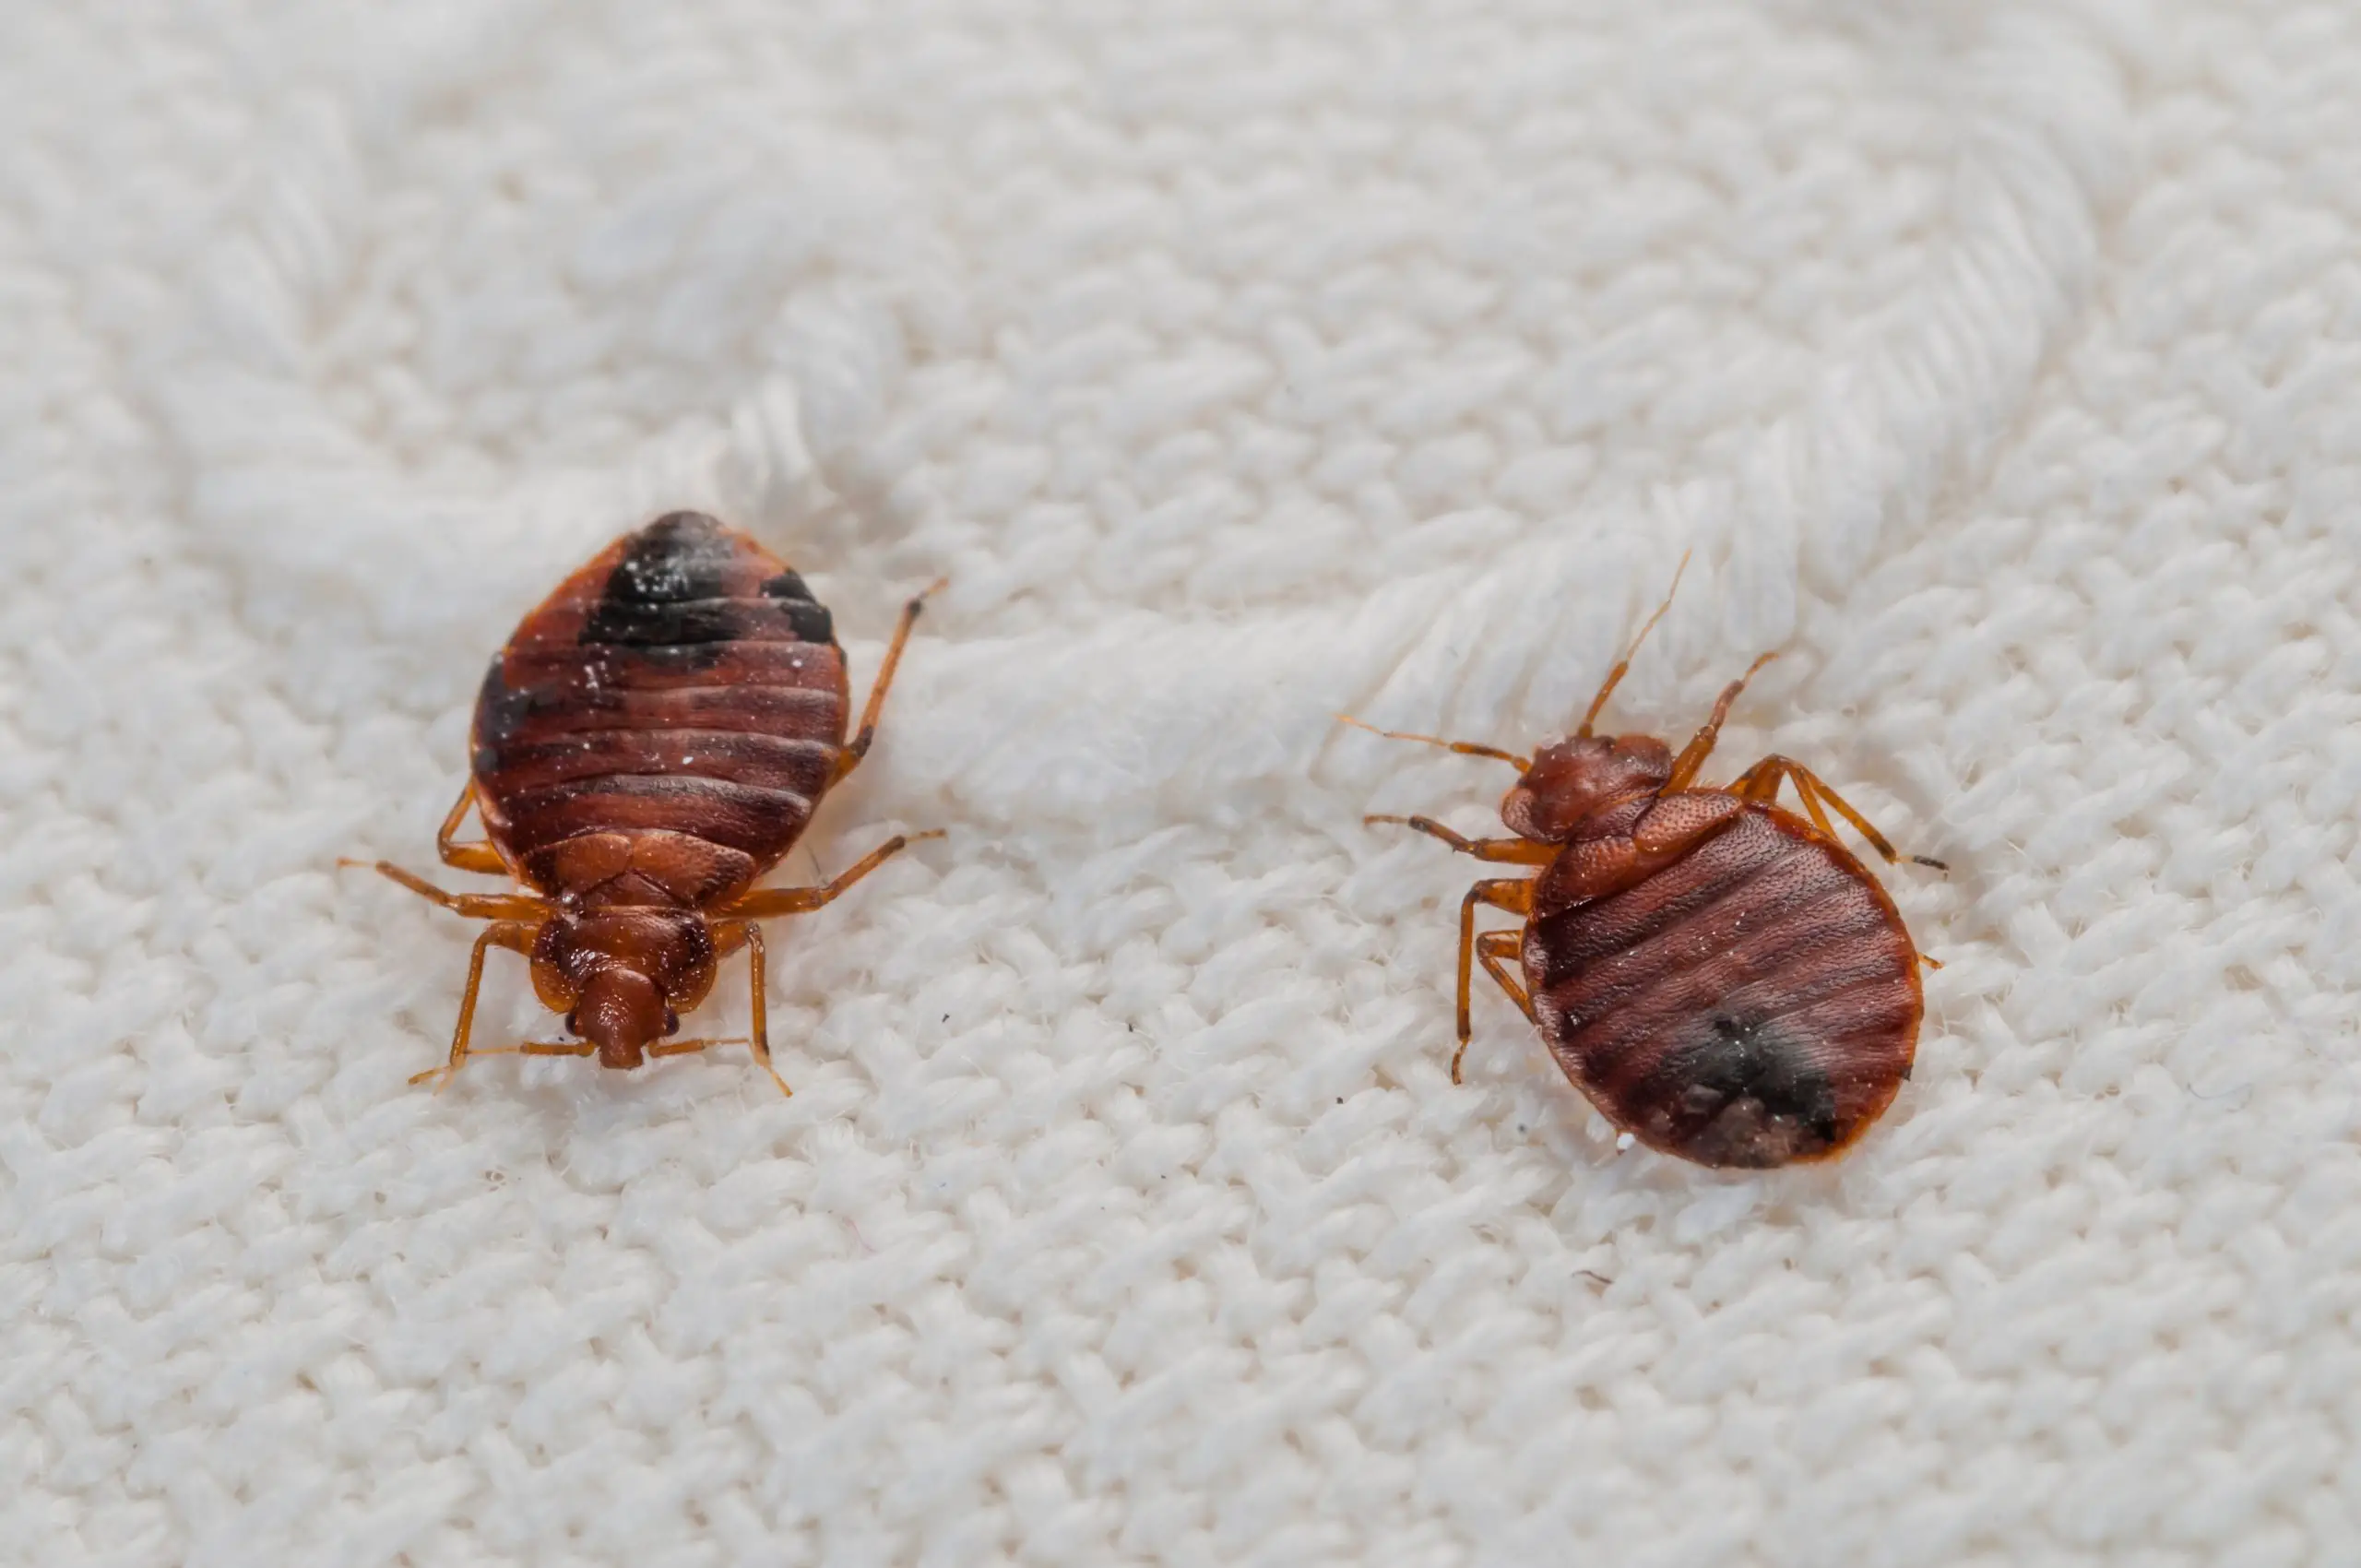 How Do Bed Bug Bites Change?